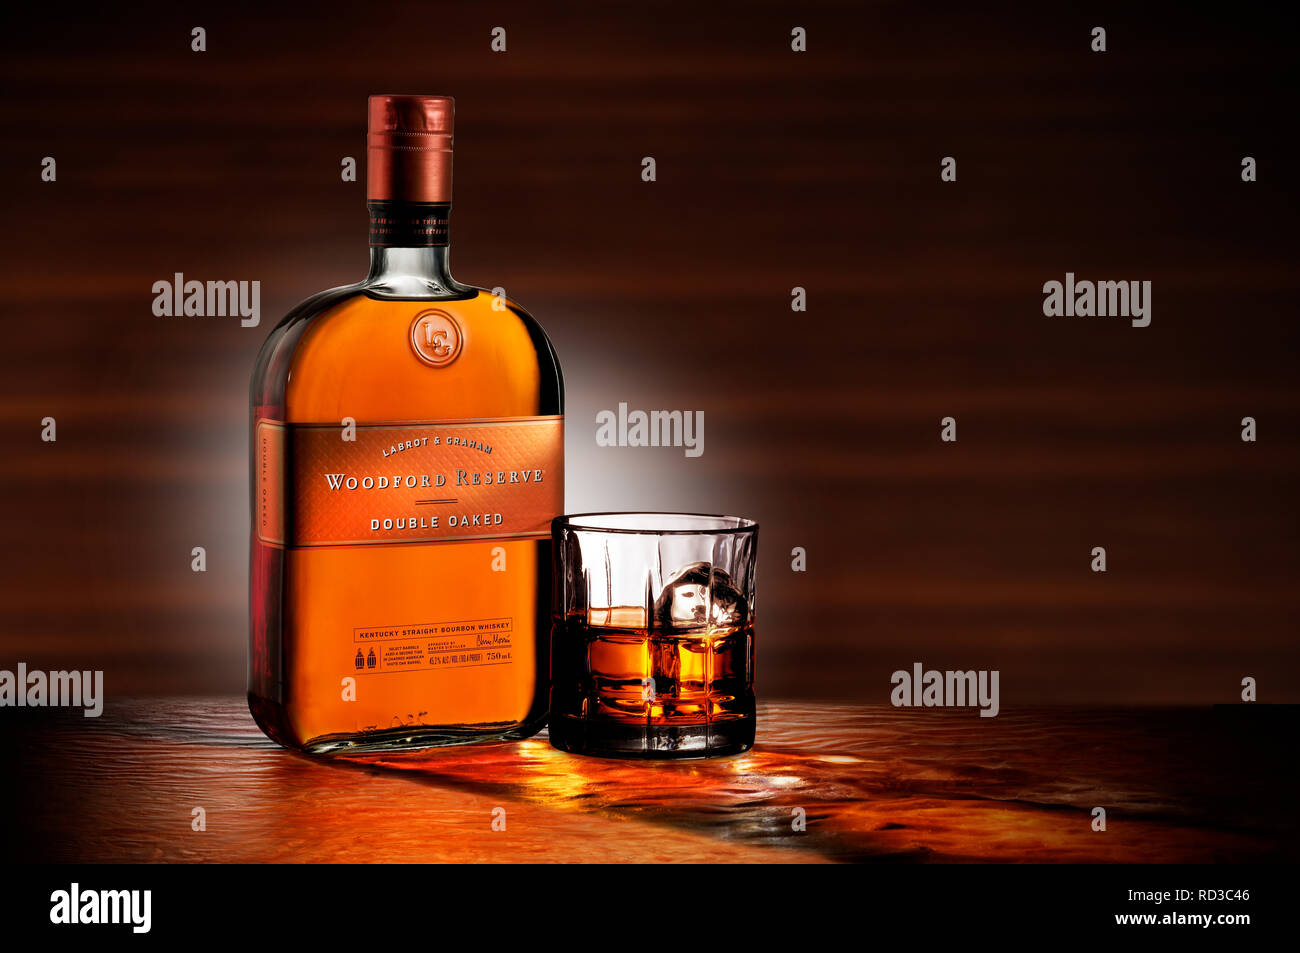 Immagine a colori della bottiglia di Woodford Reserve Whisky e un bicchiere di whisky, studio shot Foto Stock